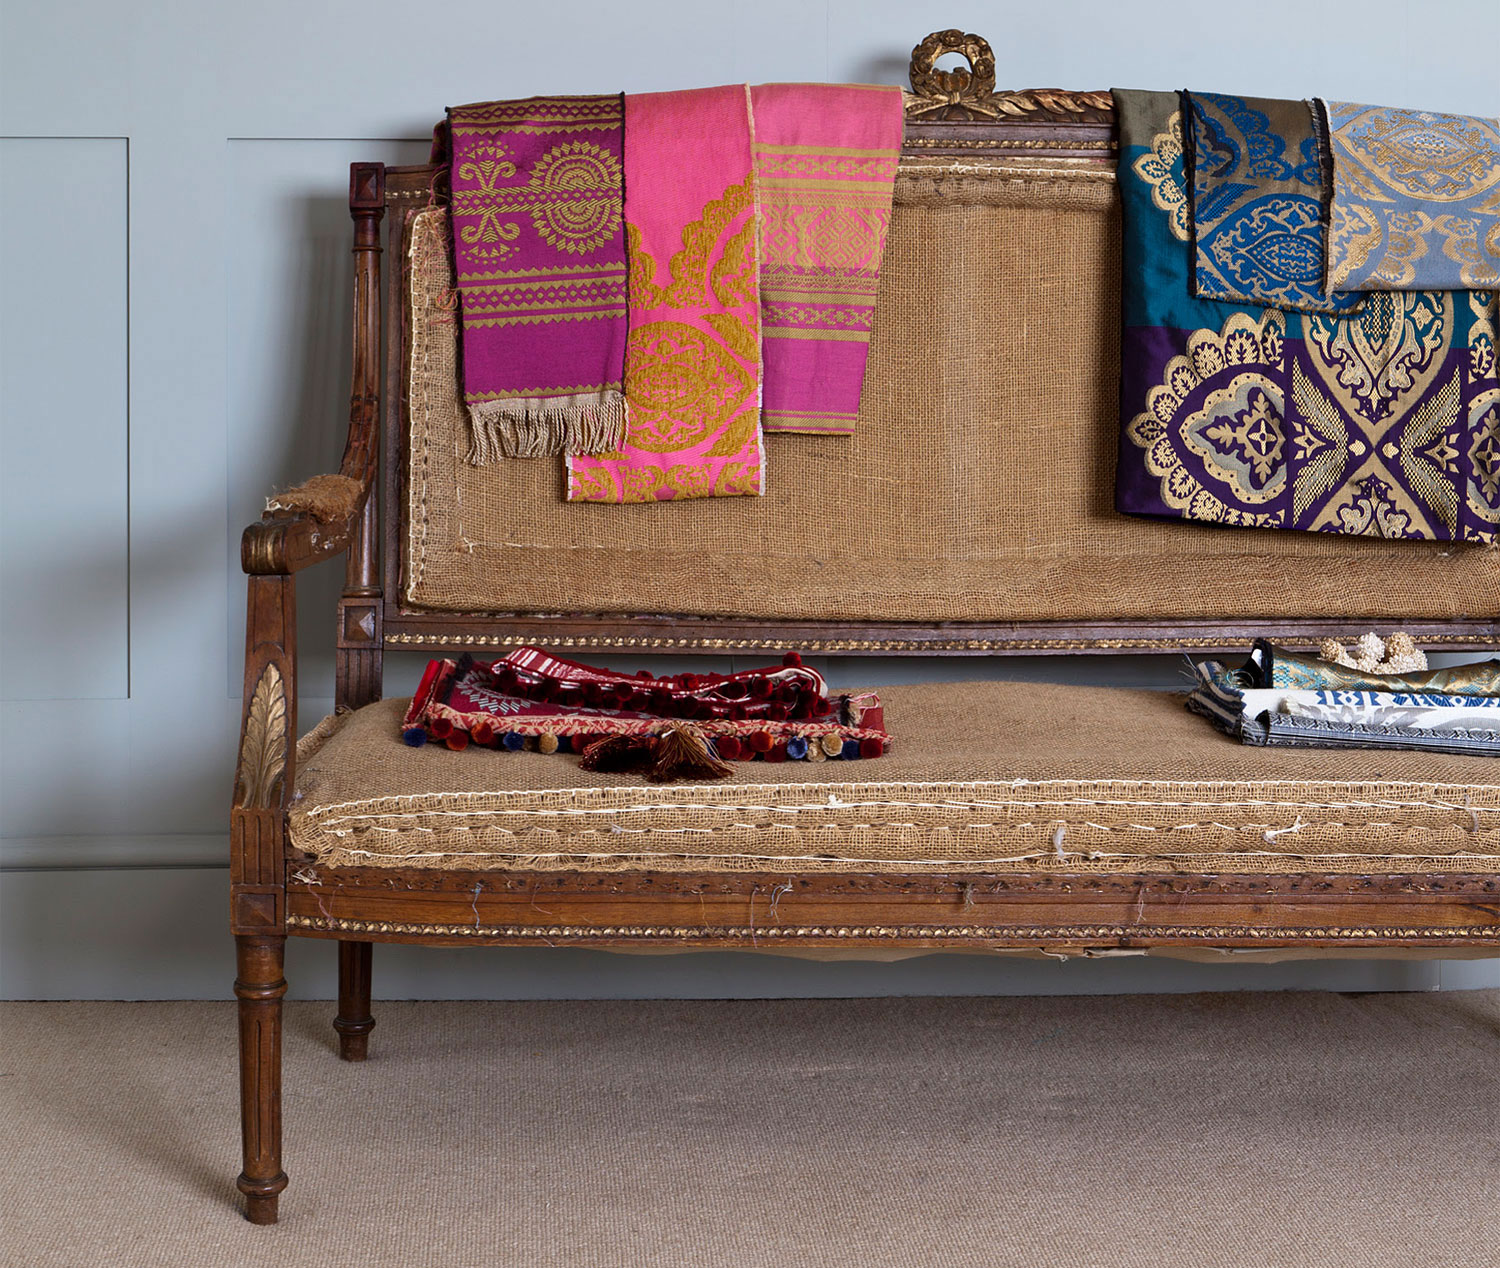 Tkaniny Julii Brendel-Lee z różnych kolekcji. Fotografia udostępniona dzięki uprzejmości Artystki